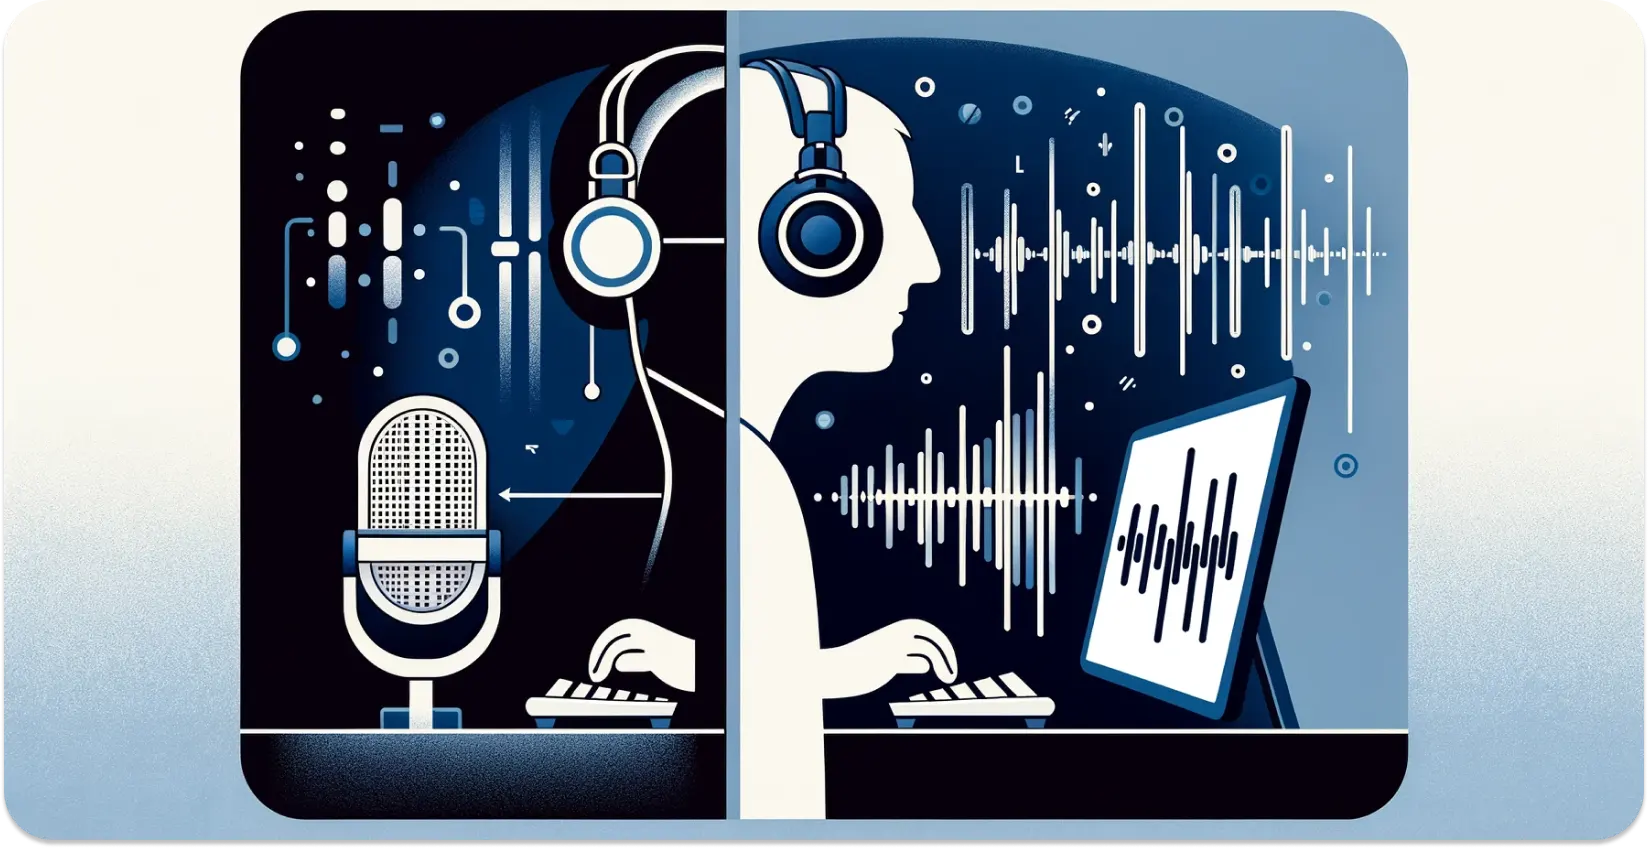 Representação estilizada de uma pessoa com fones de ouvido transcrevendo áudio de um tablet, com ondas sonoras visuais.